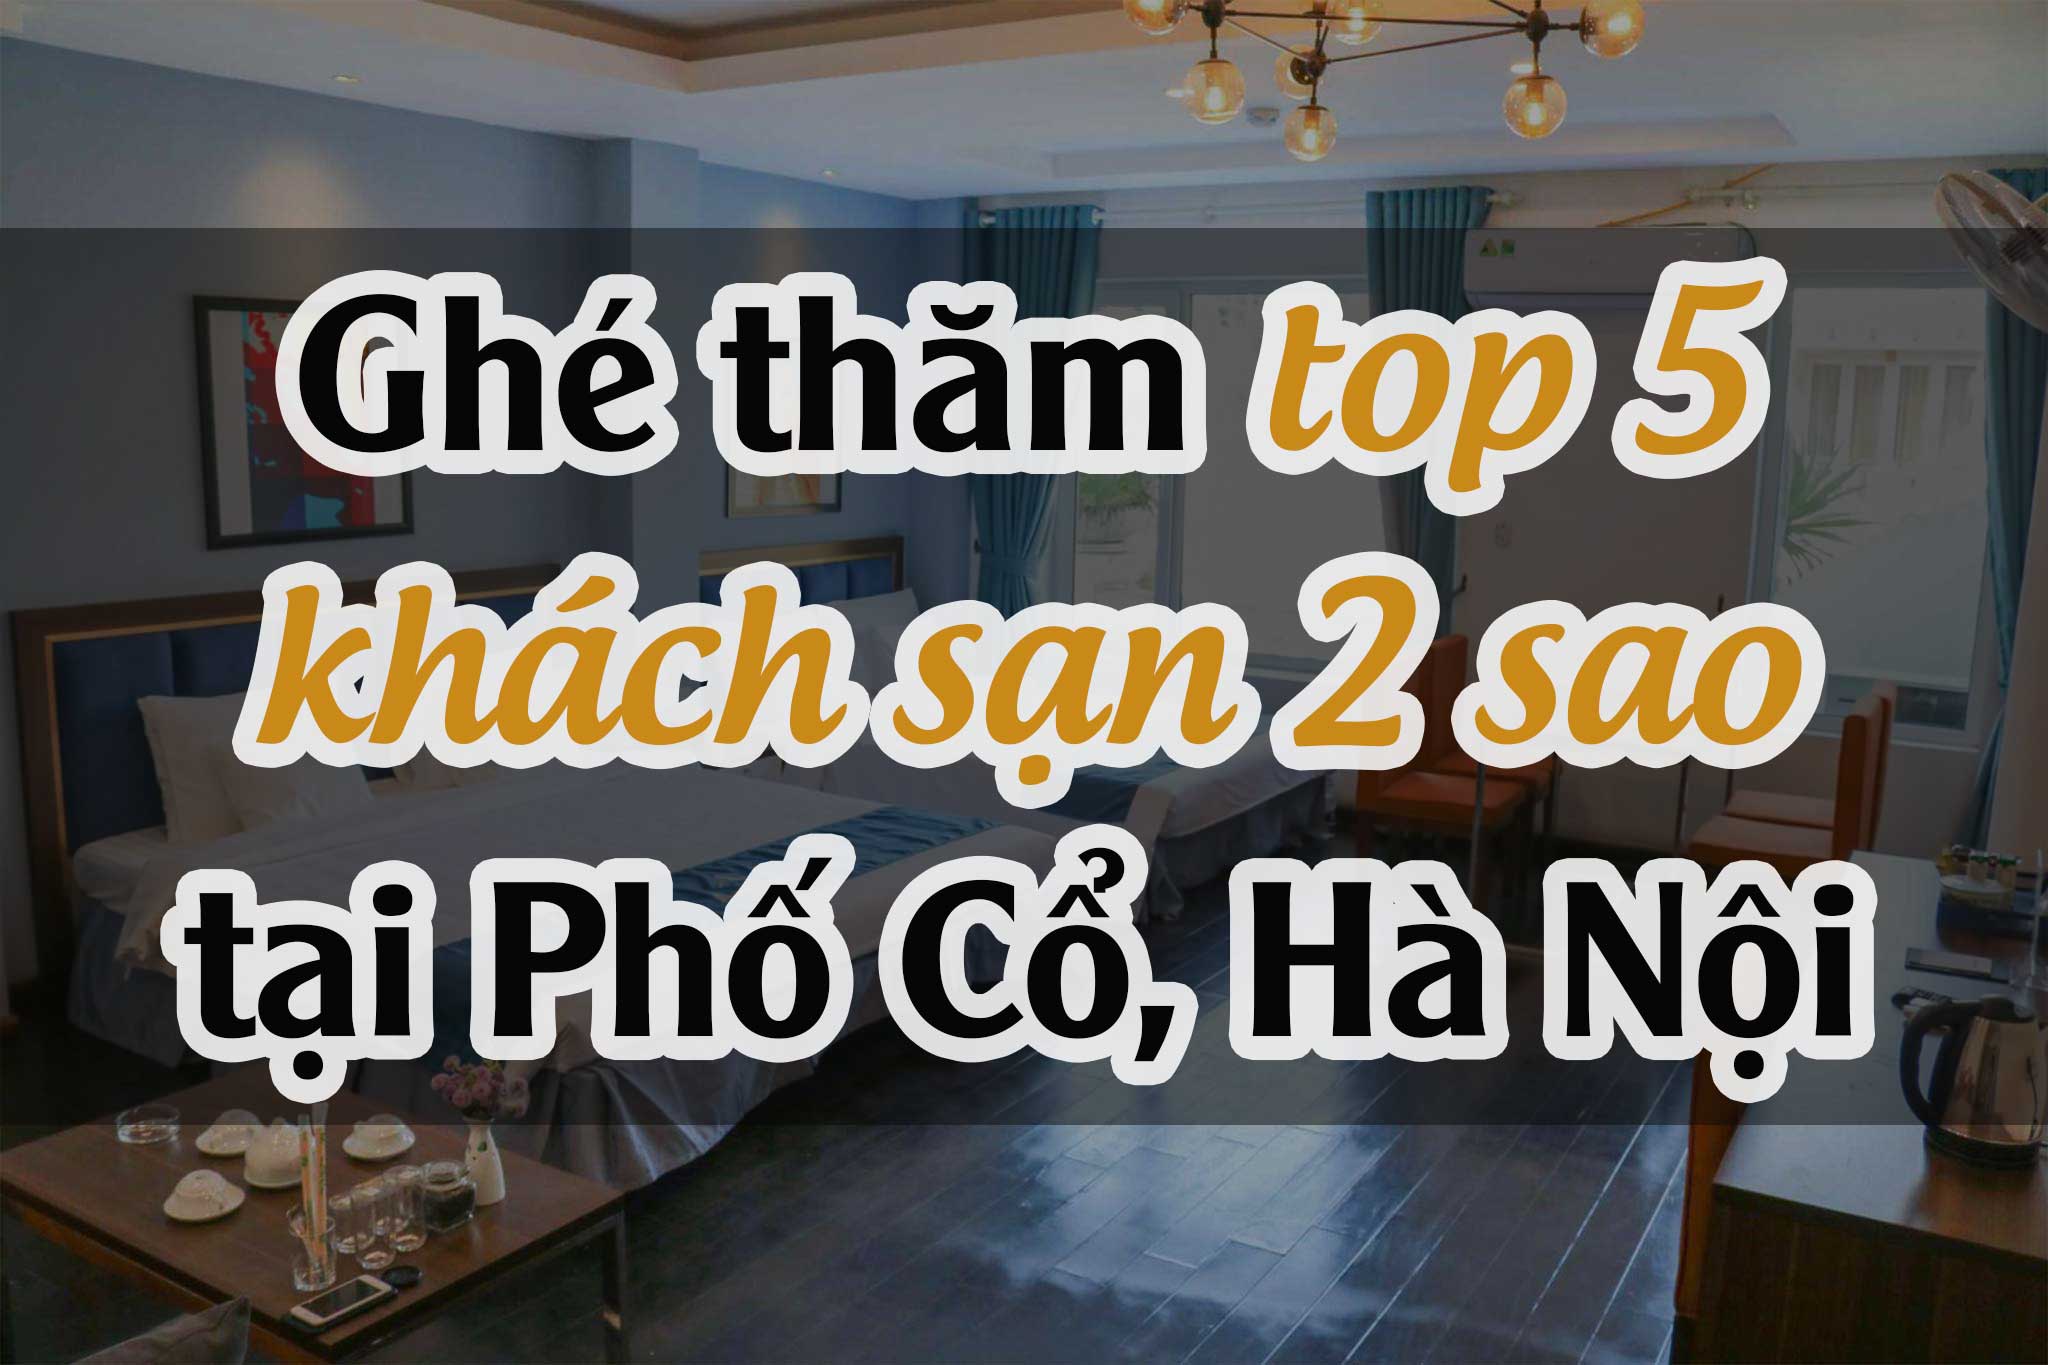 Ghé thăm top 5 khách sạn 2 sao tại Phố Cổ, Hà Nội